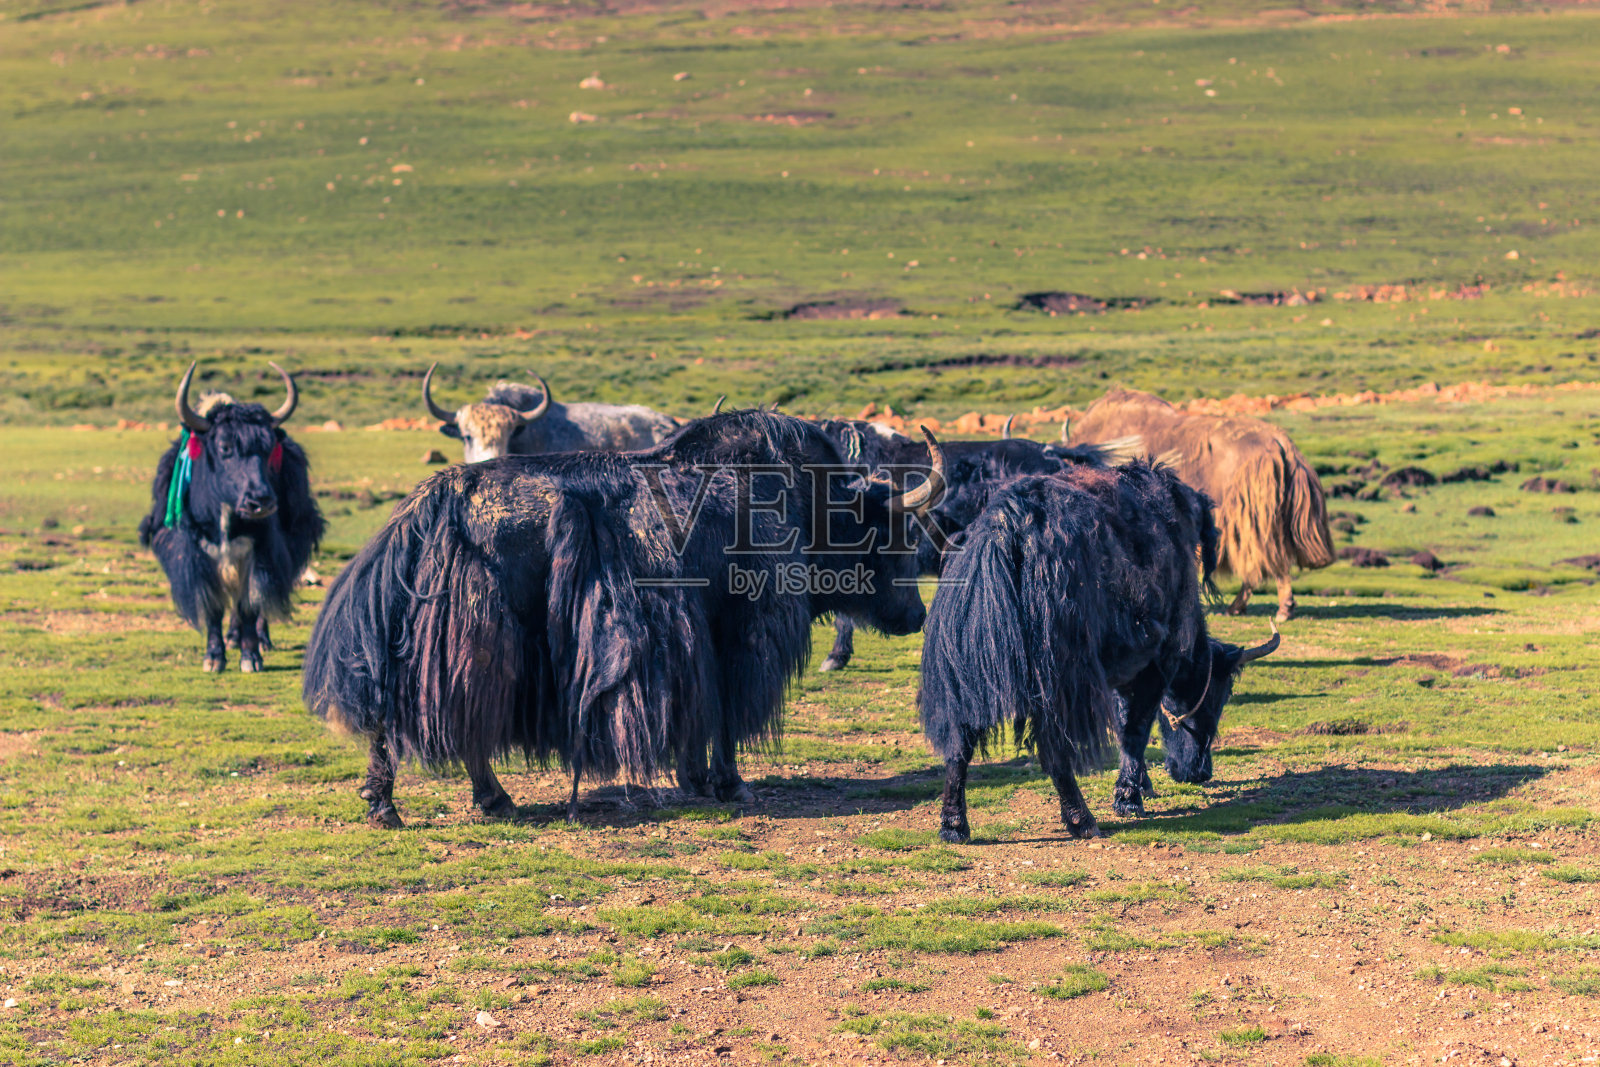 2014年8月16日——西藏农村的牦牛照片摄影图片